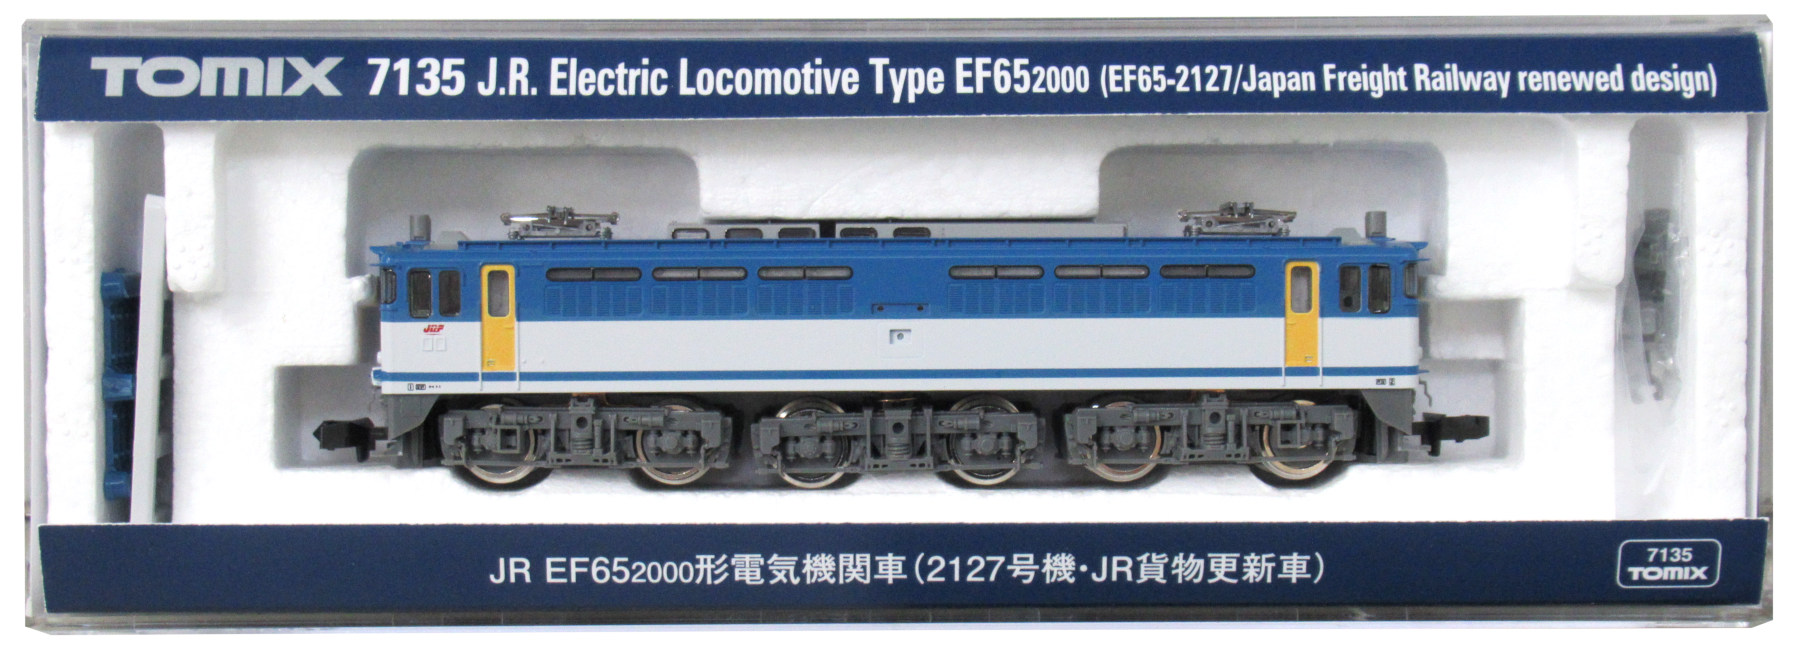 公式]鉄道模型(7135JR EF65-2000形 電気機関車 (2127号機・JR貨物更新